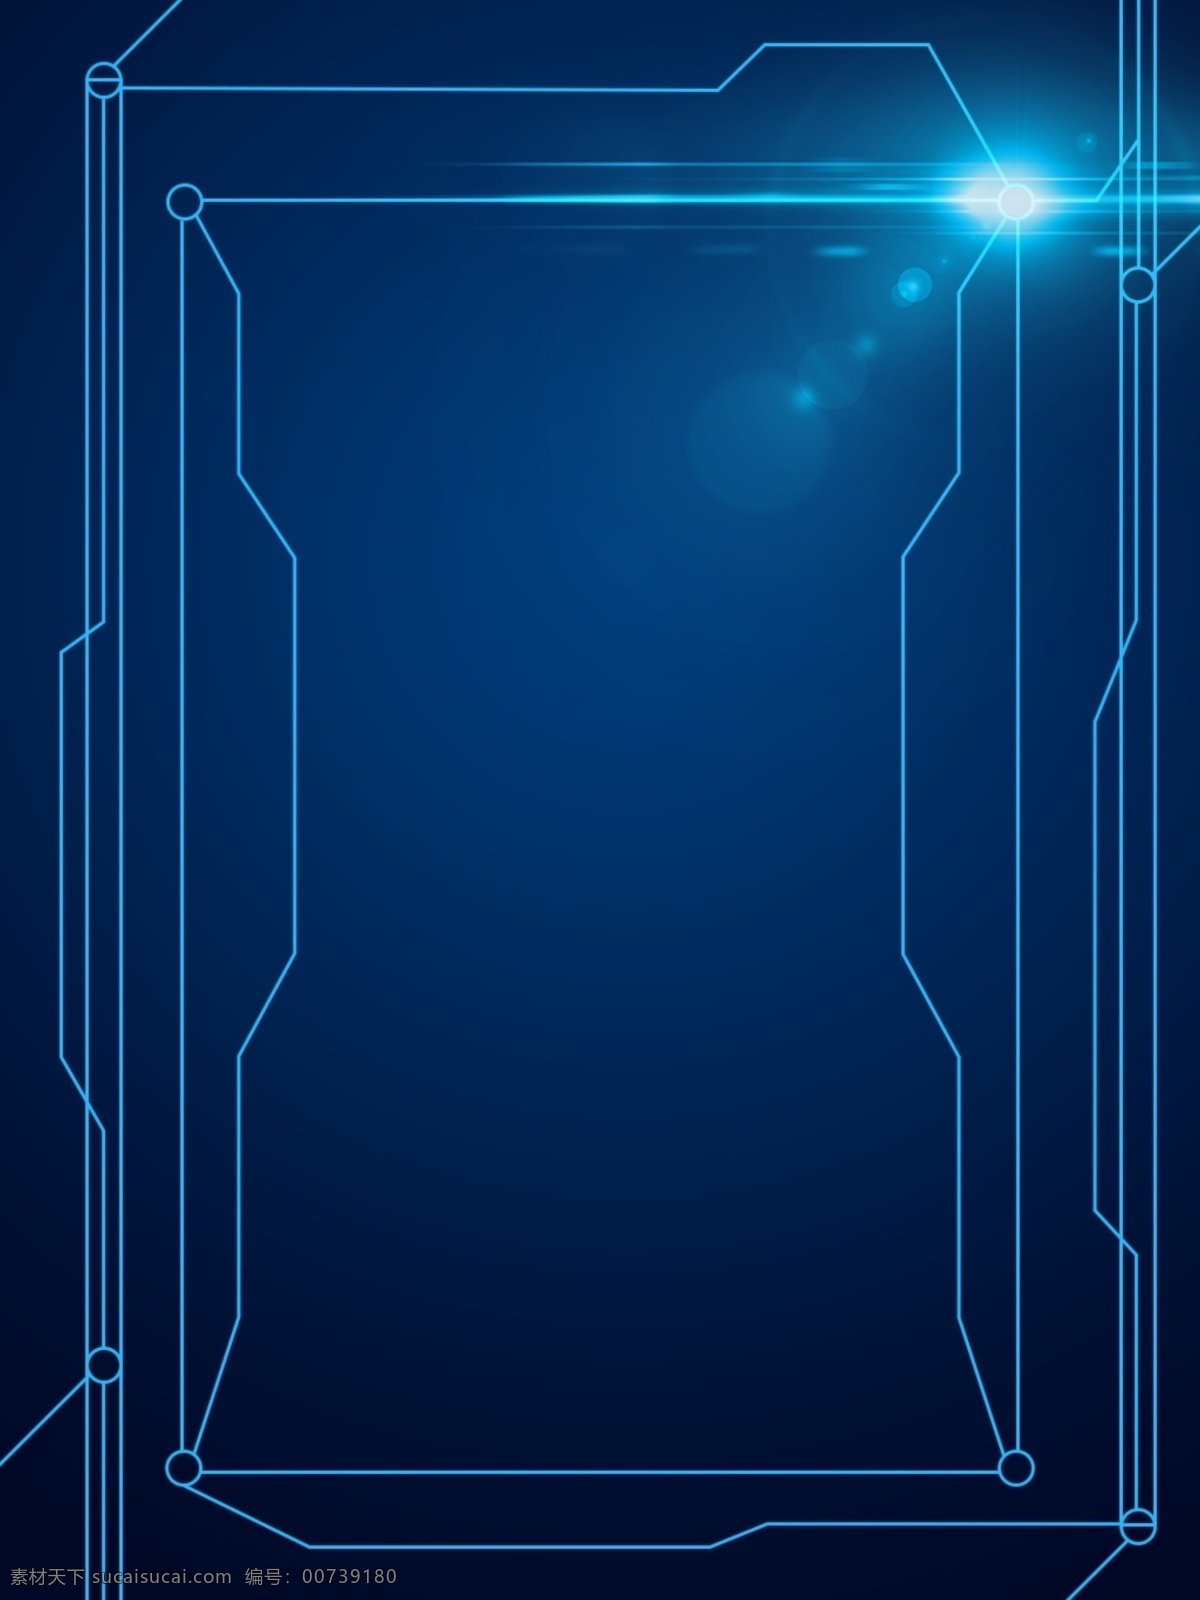 蓝色 电路板 科技 背景 光 线条 创意 黑色 科技感 h5 酷炫 科学 矩形 圆形 星光 闪光 光晕 渐变 蓝黑色